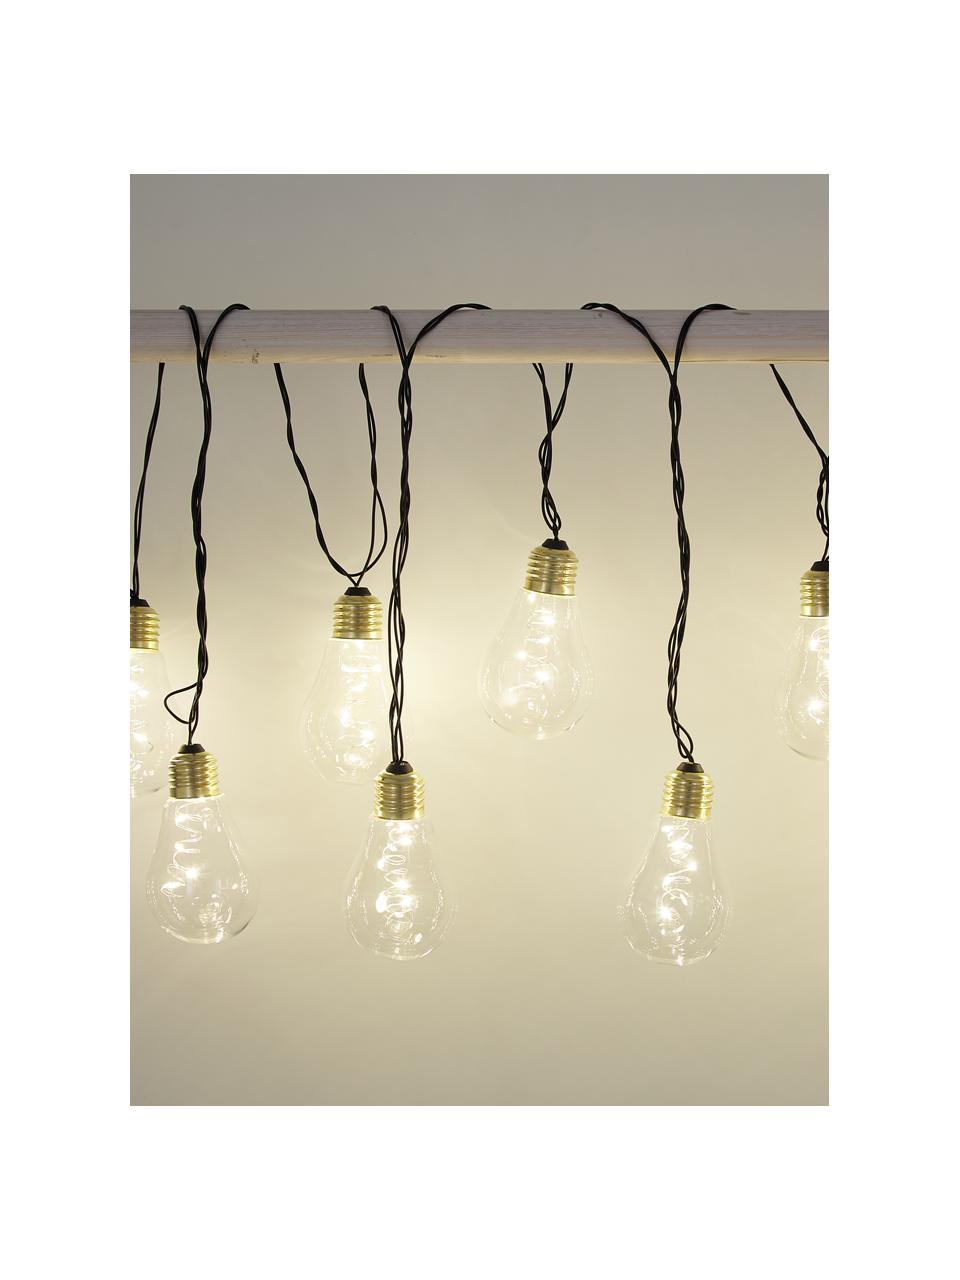 Guirlande lumineuse LED Bulb, 360 cm, Ampoules : transparent, couleur dorée Câble : noir, long. 360 cm